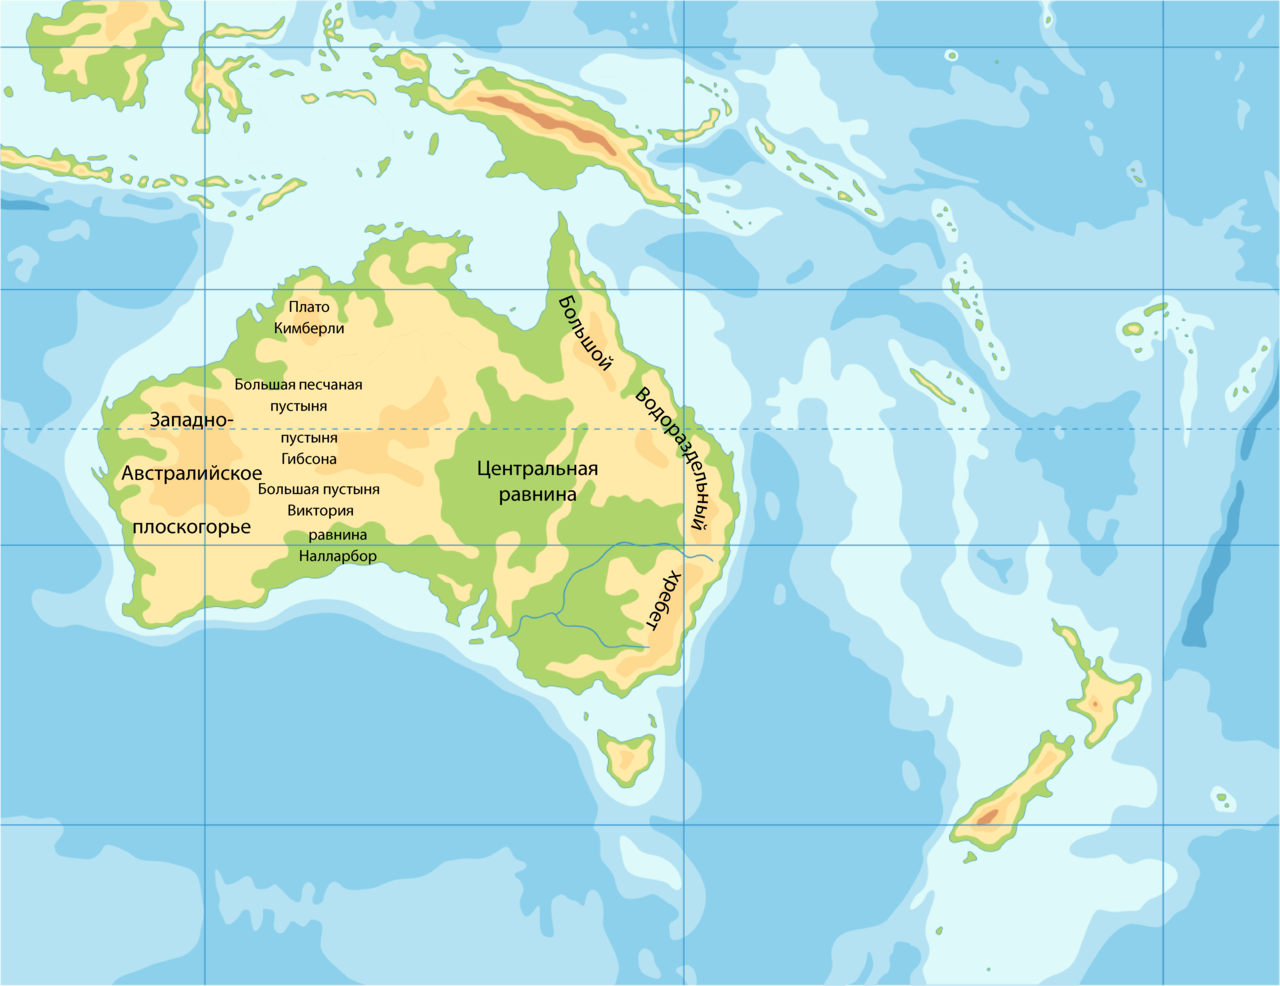 Большой водораздельный хребет полушарие. Формы рельефа Австралии на карте. Центральная равнина Австралии на карте контурной. Западно австралийское плоскогорье на карте Австралии. Западноавстралийское пласкогорье на карте.